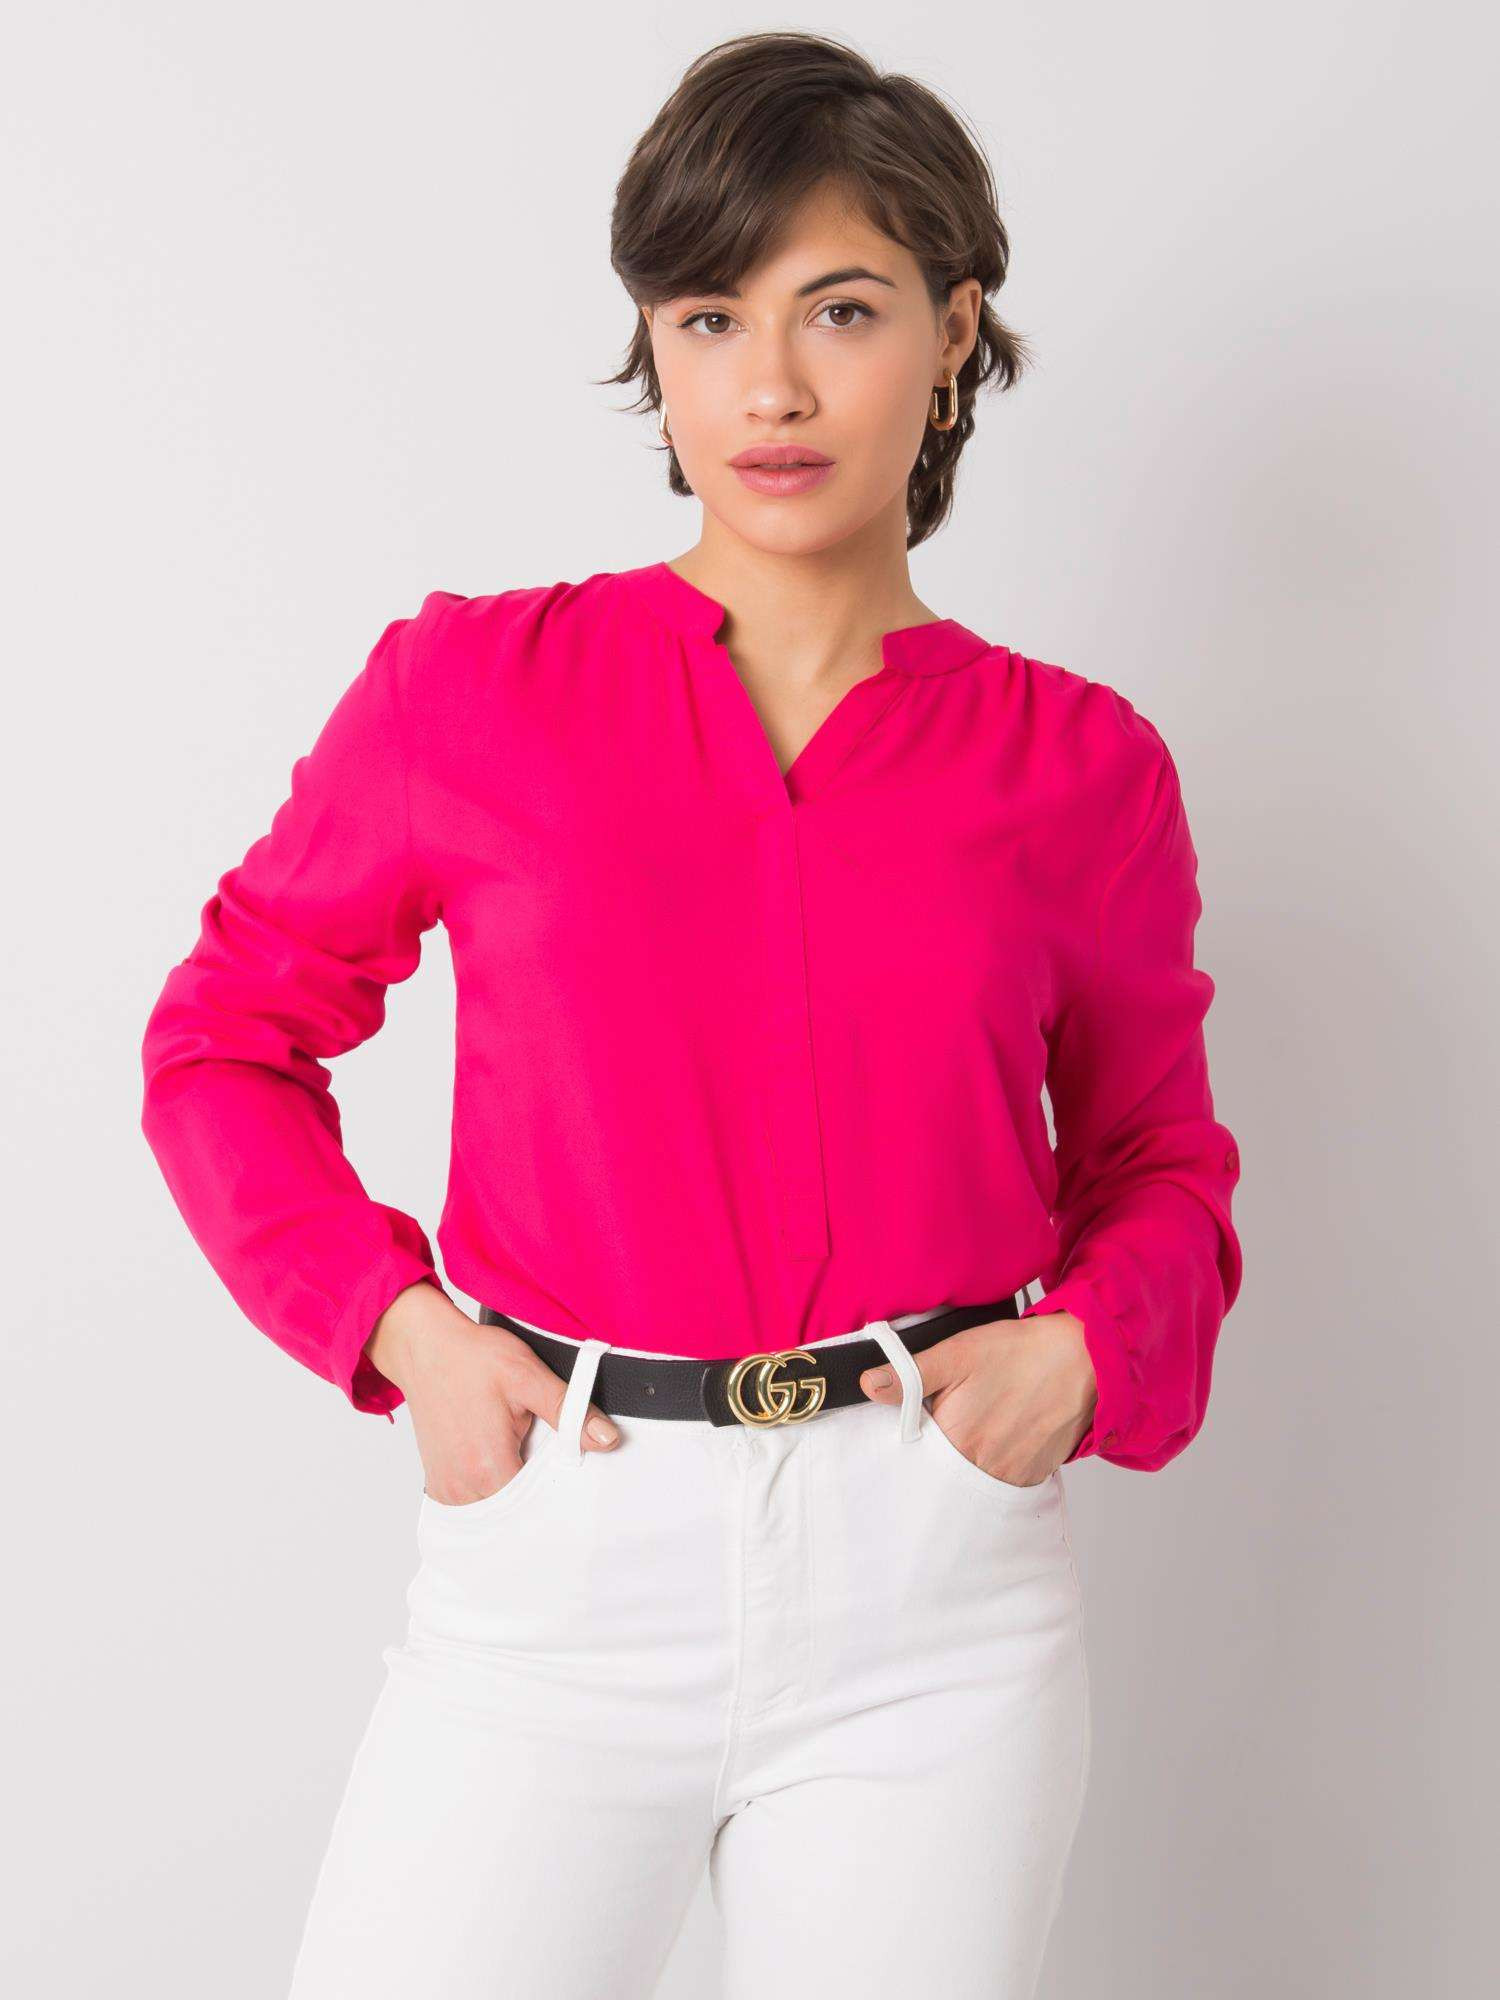 Dámská košile KS tmavě růžová RUE PARIS model 18480635 - FPrice Velikost: M-38, Barvy: tmavě růžová